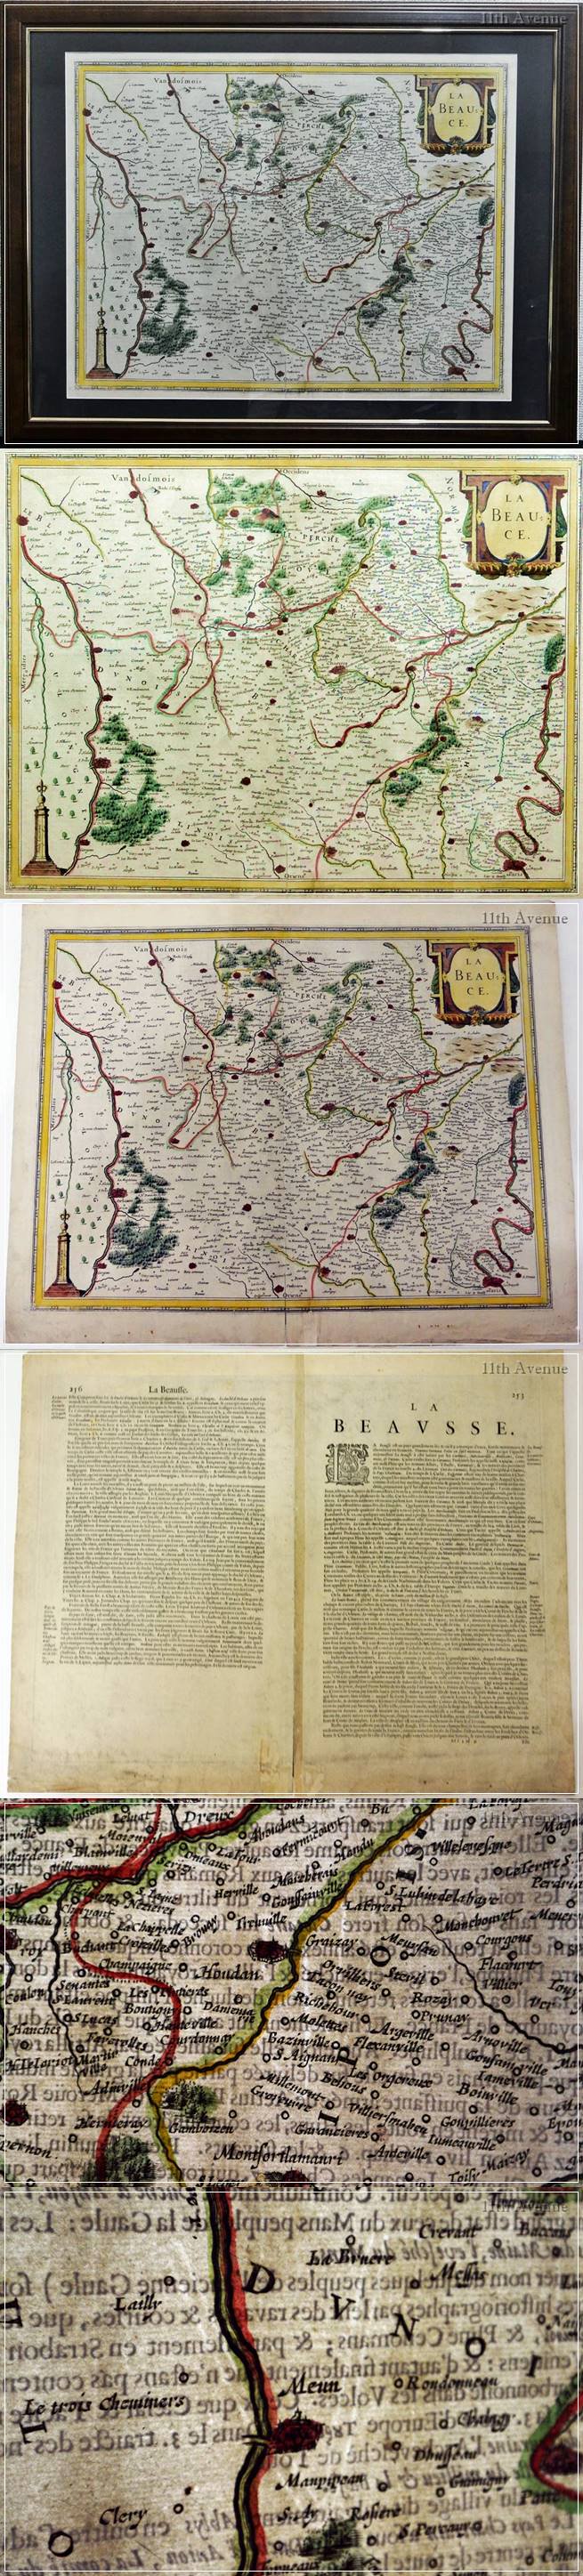 ヘンリカス・ホンディウス2世　La Beauce 地図